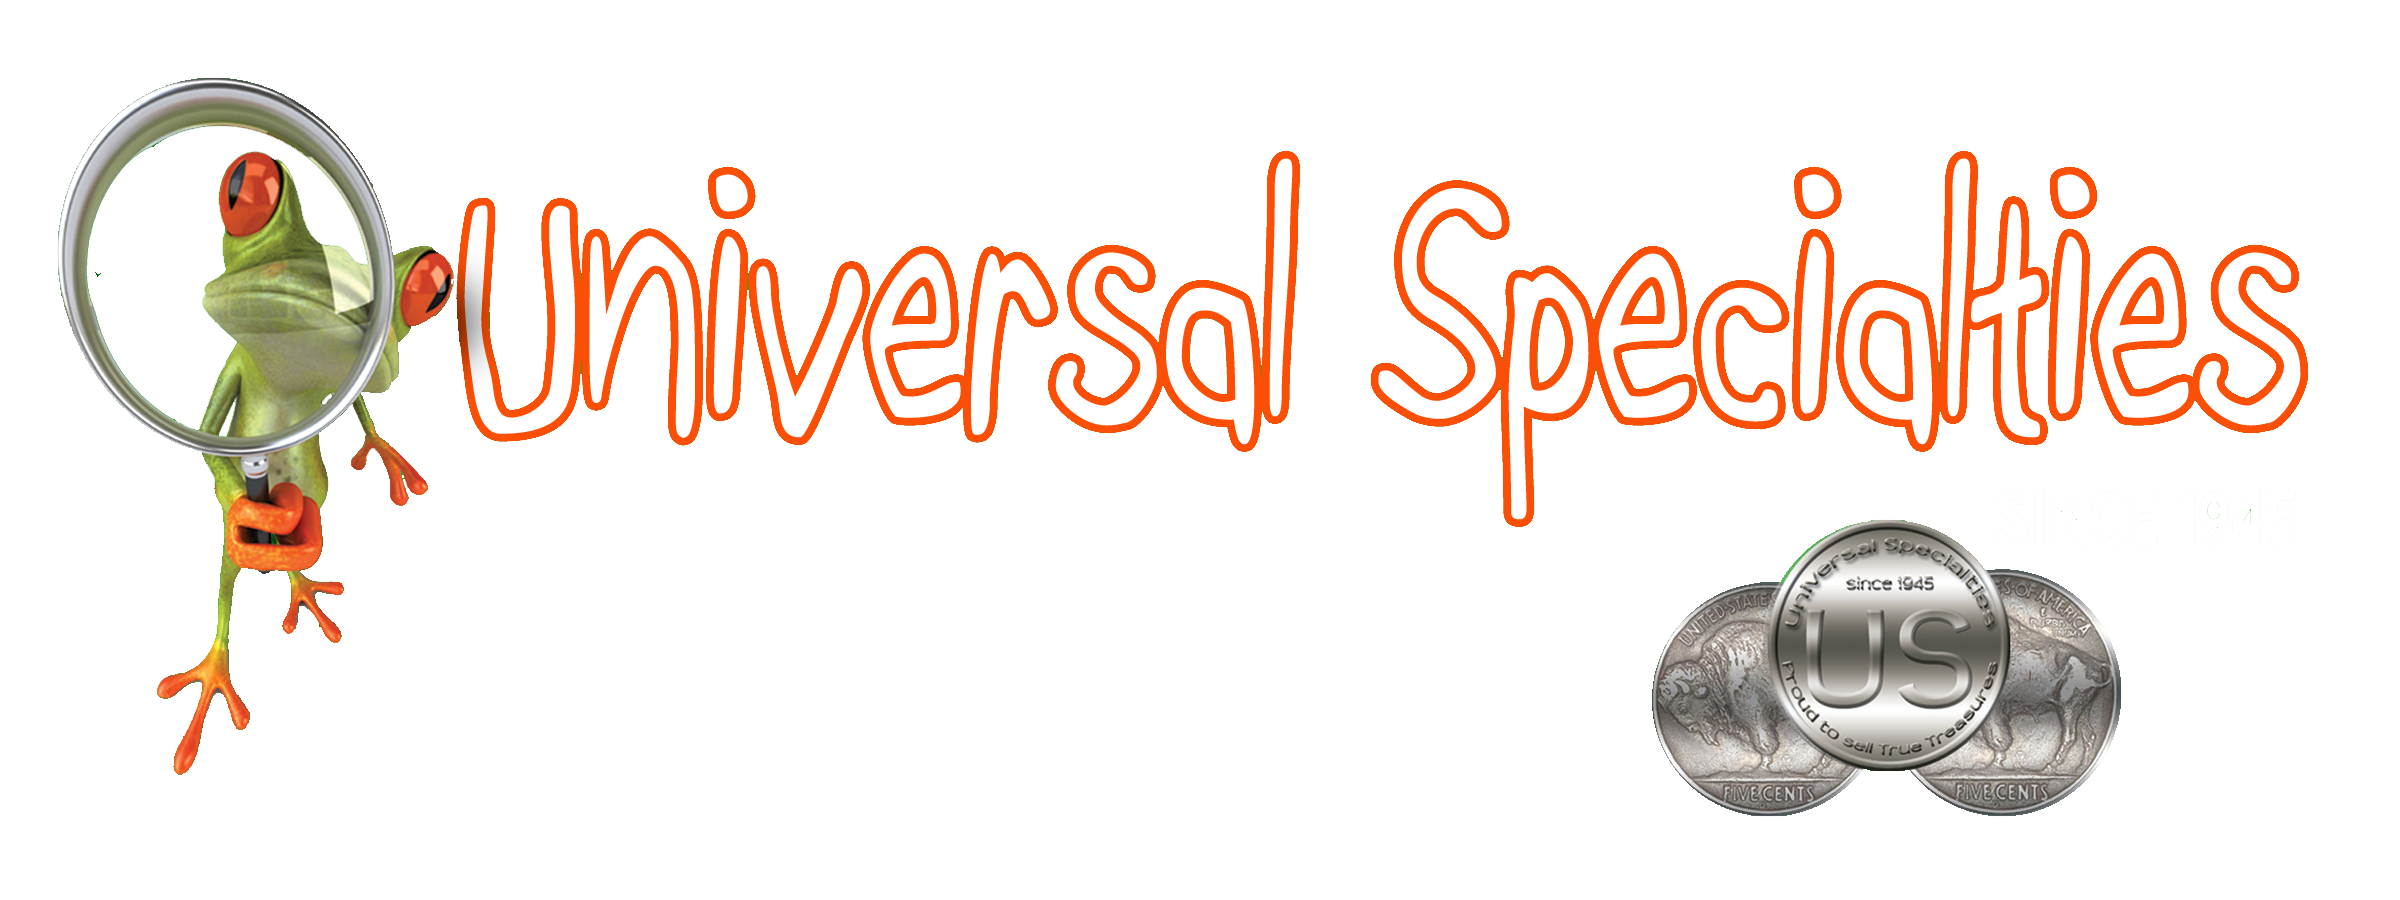 Universalspecialties logo